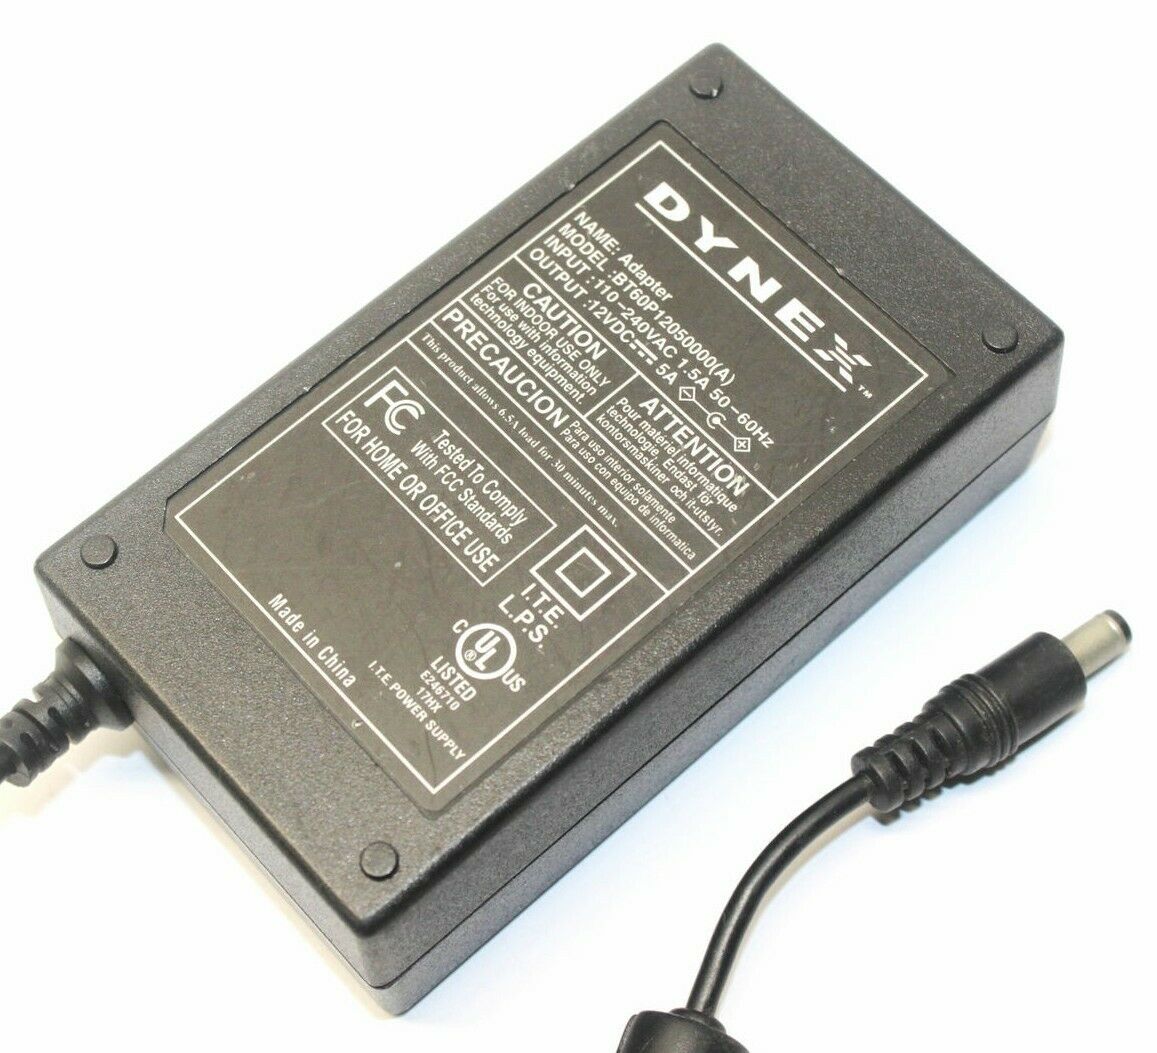 Genuine Dynex BT60P12050000(A) ITE Power Supply AC Adapter Output DC 12V 5A Model Number: BT60P12050000(A) output:12V